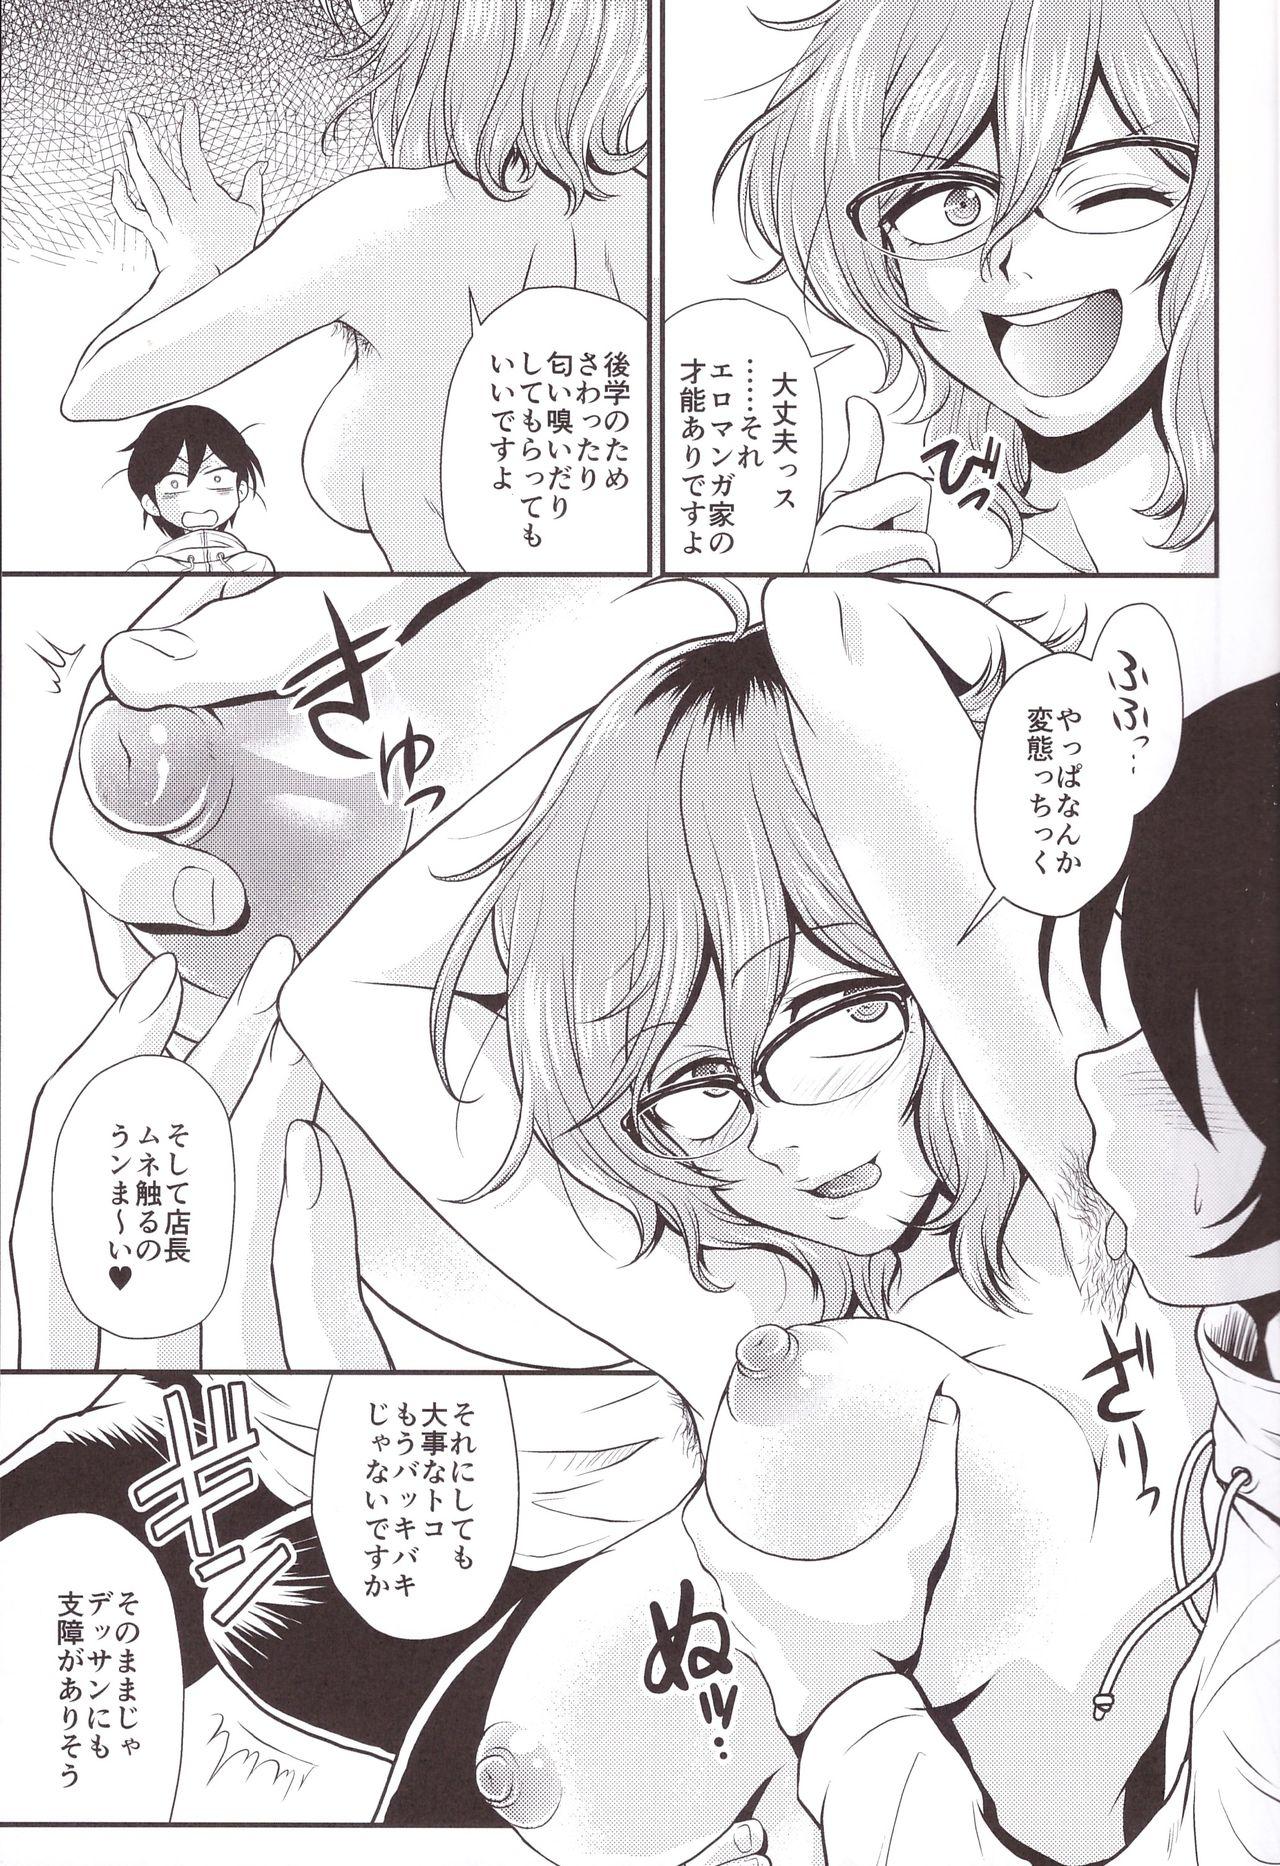 Gang Hajime-san ga Ichiban? - Dagashi kashi Rebolando - Page 11